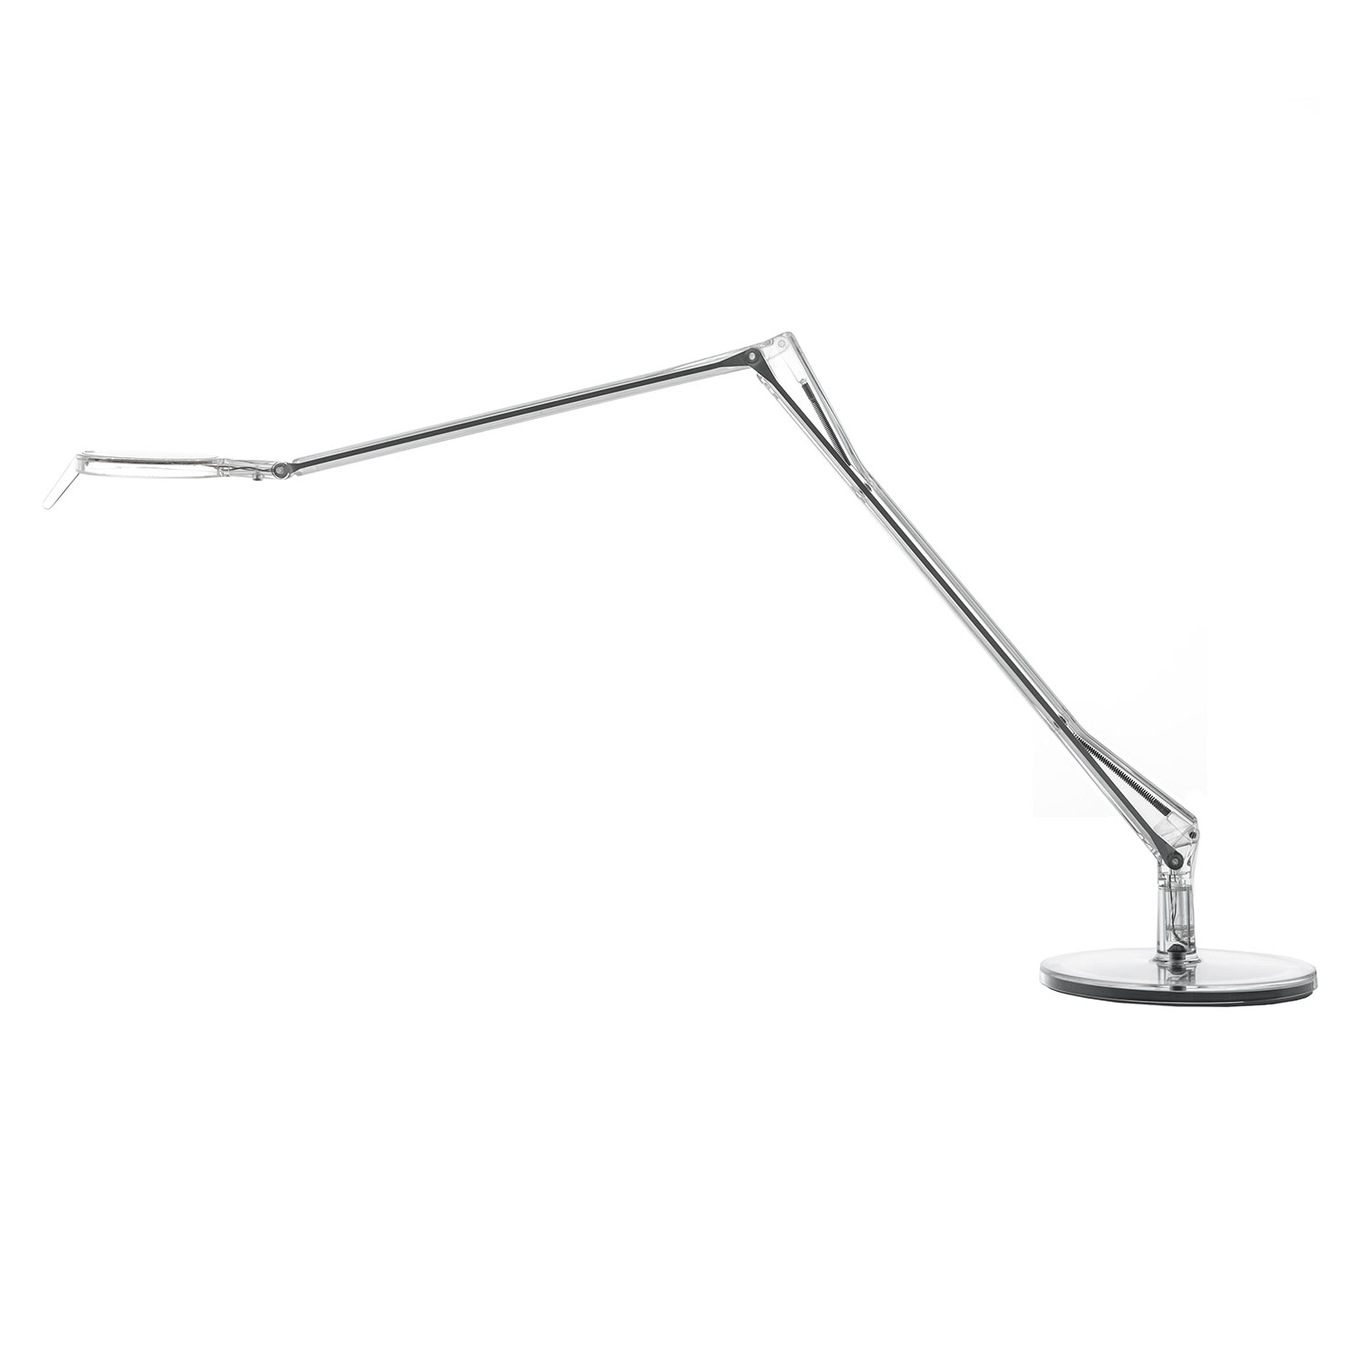 Aledin Tec Table Lamp, Clear